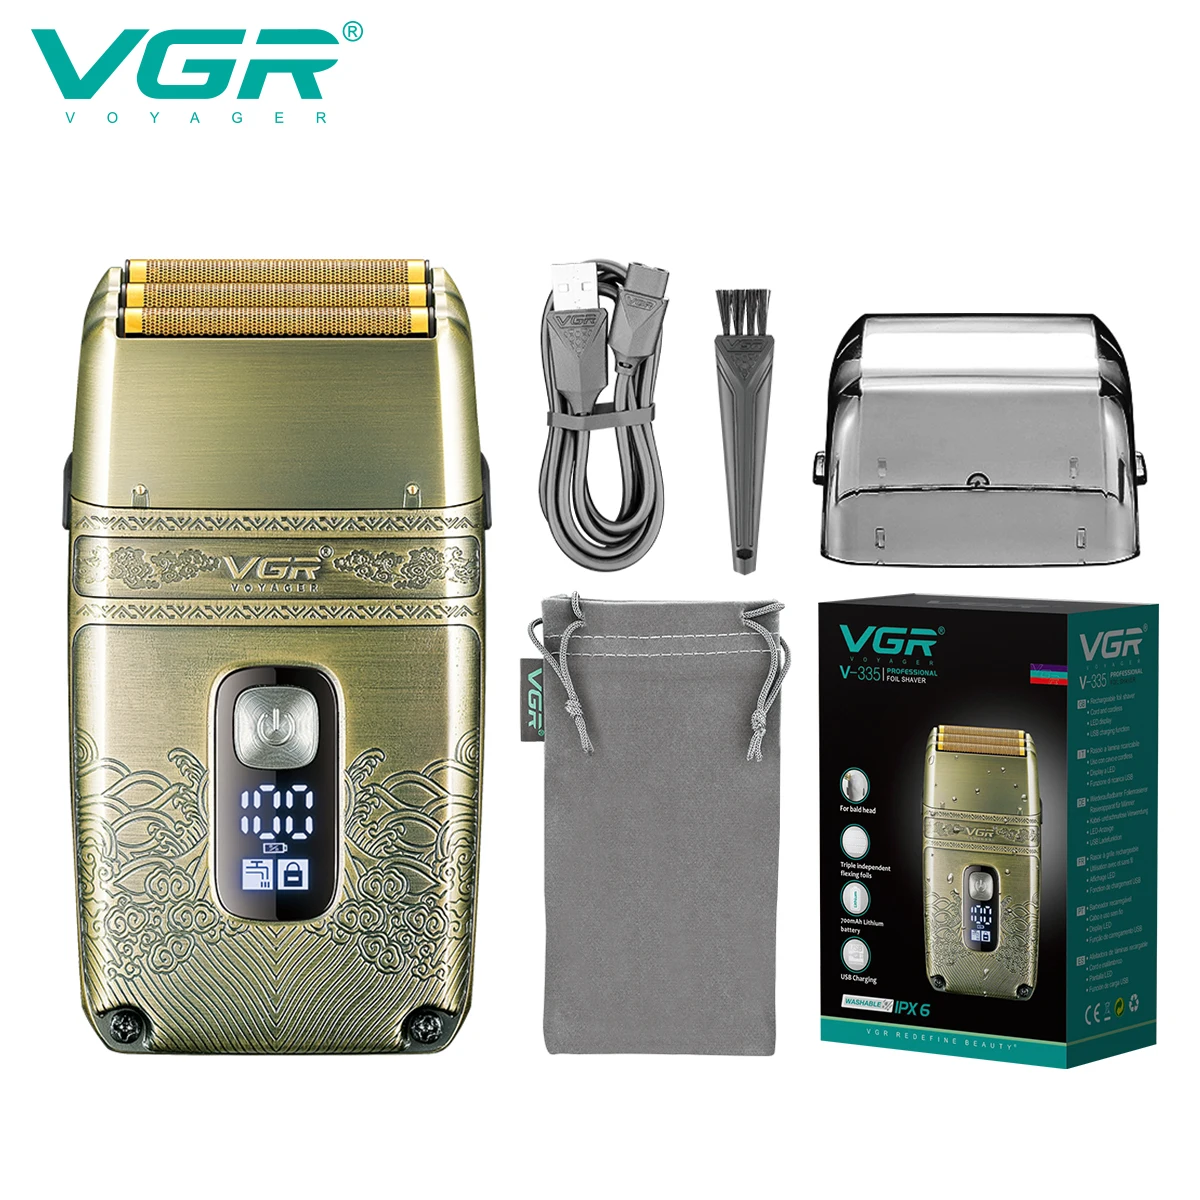 VGR Shaver Профессиональная Электрическая бритва, станок для бритья, Водонепроницаемый Триммер для бороды, Металлическая бритва, бритва с цифровым дисплеем для мужчин V-335